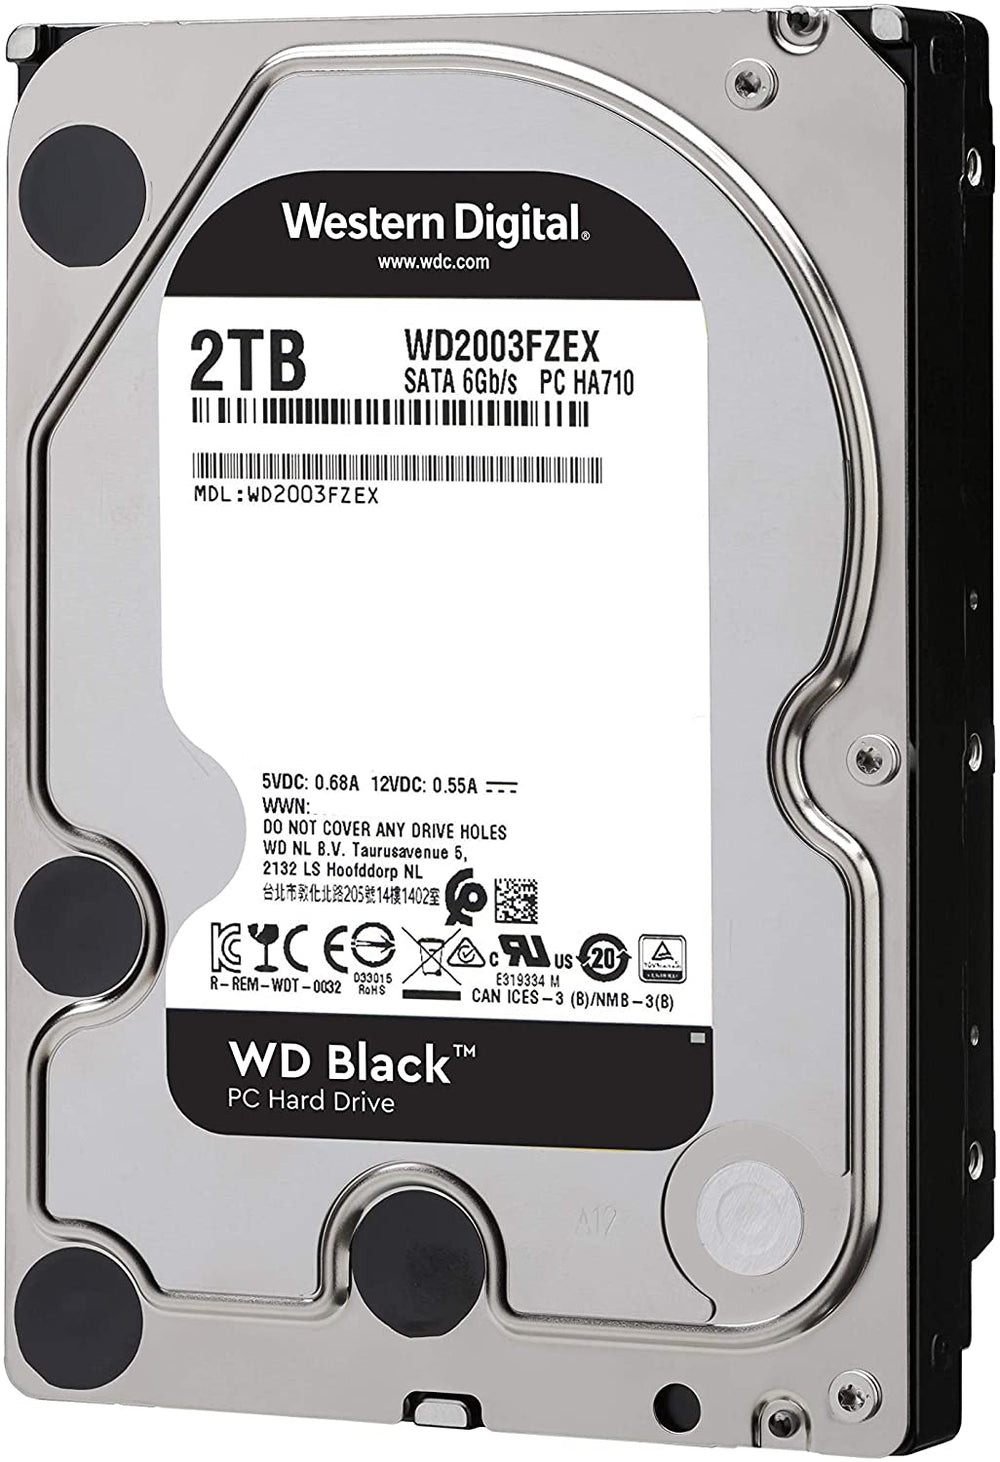 WD Black 2TB Performance Internal Hard Drive - 7200 RPM Class, SATA 6 Gb/s, 64 MB Cache